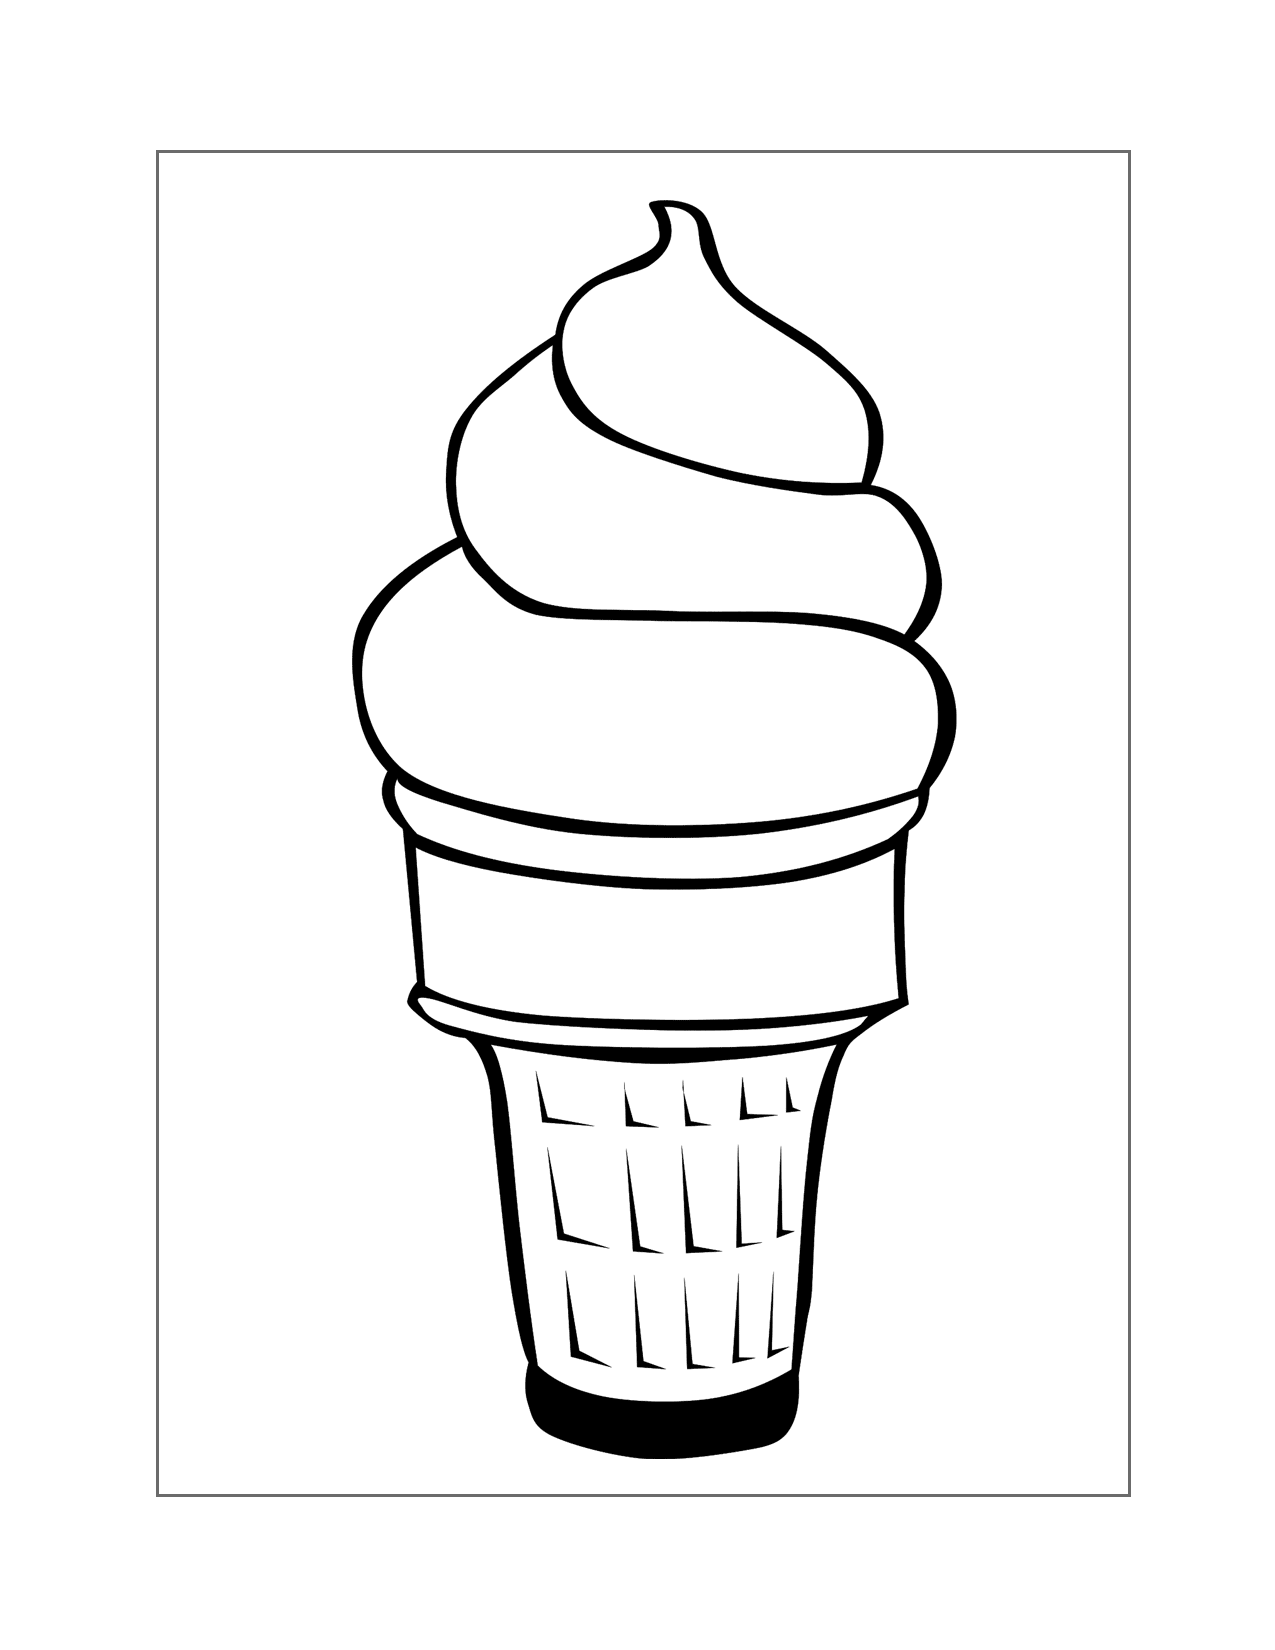 Soft Serve Ice Cream Cone Coloring Page